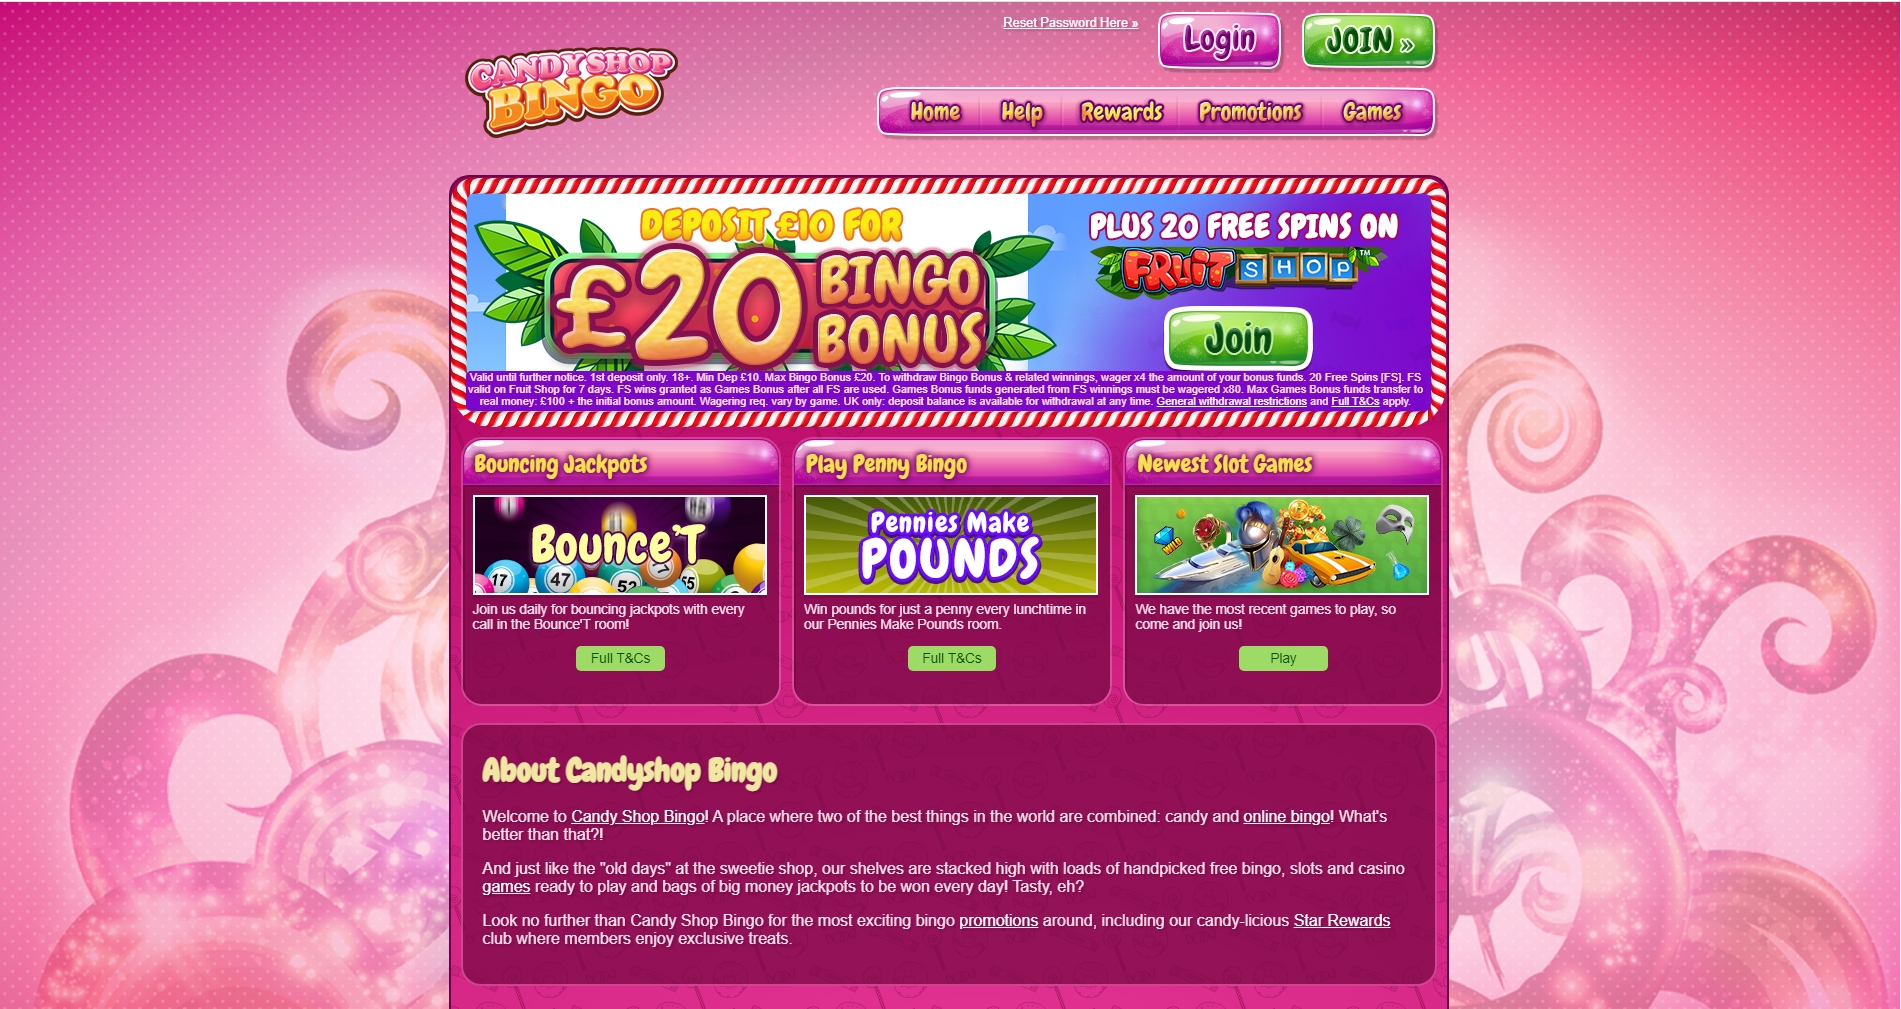 Candy Shop Bingo Casino Review